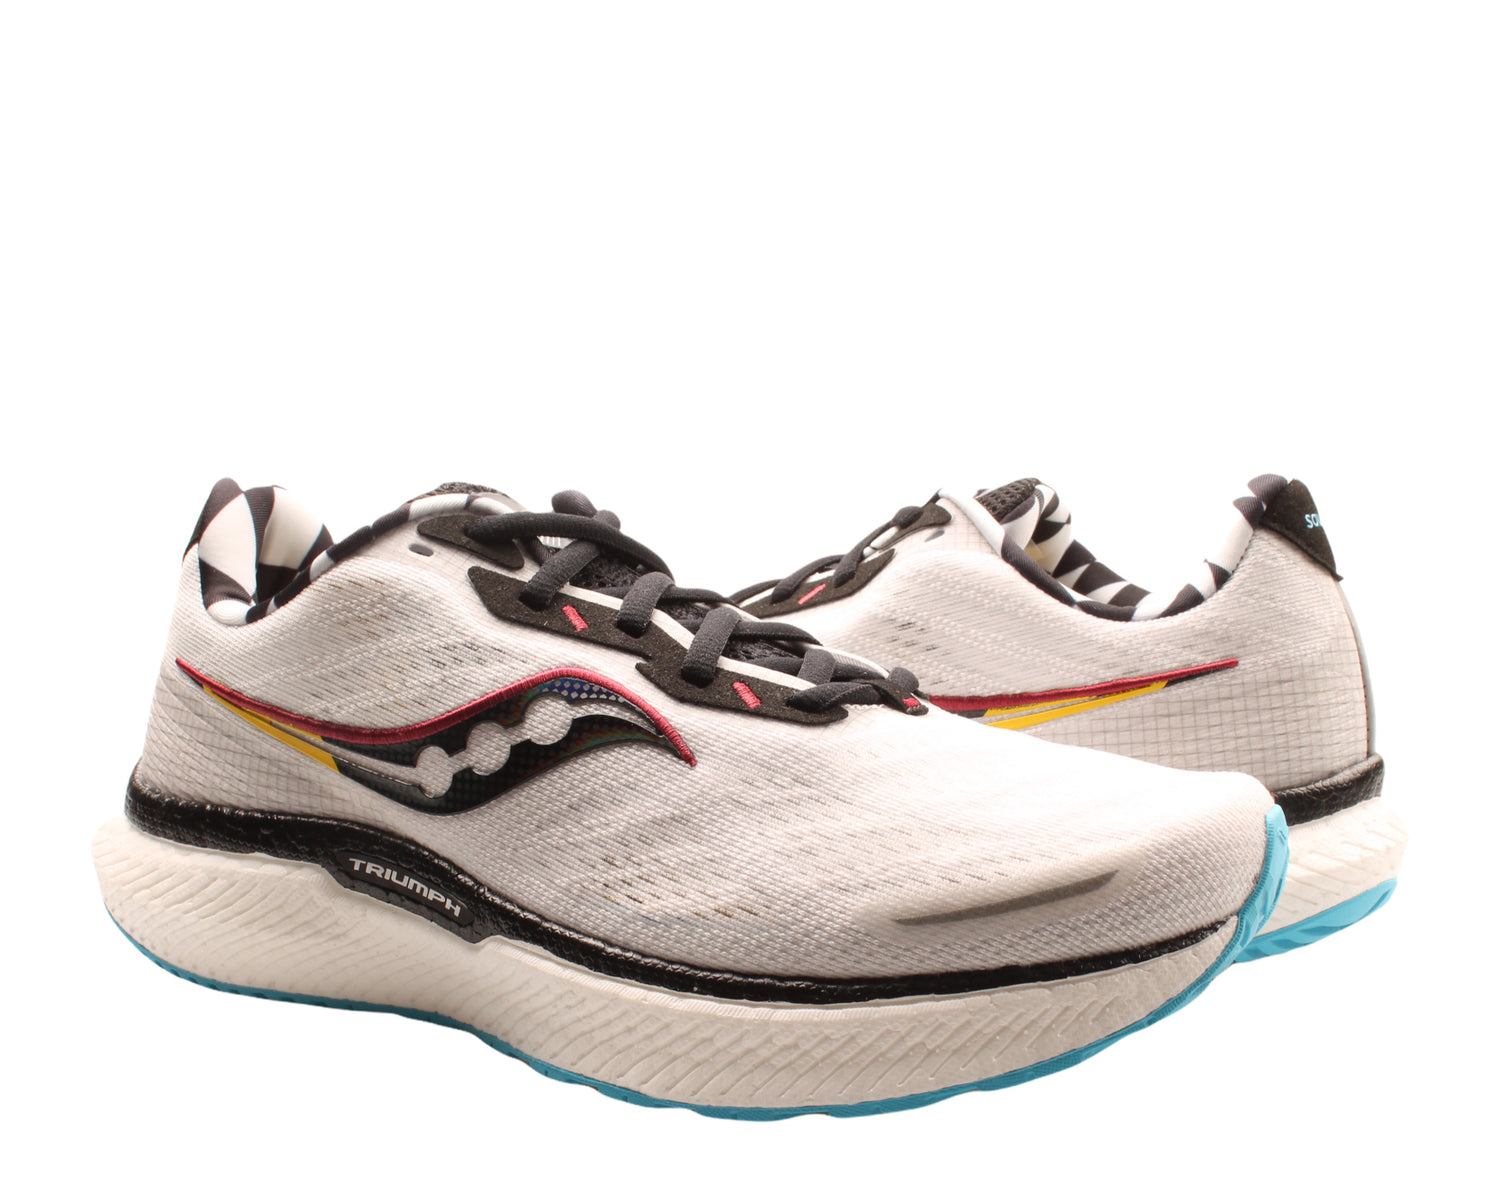 Saucony Triumph 19 Men's Running Shoes